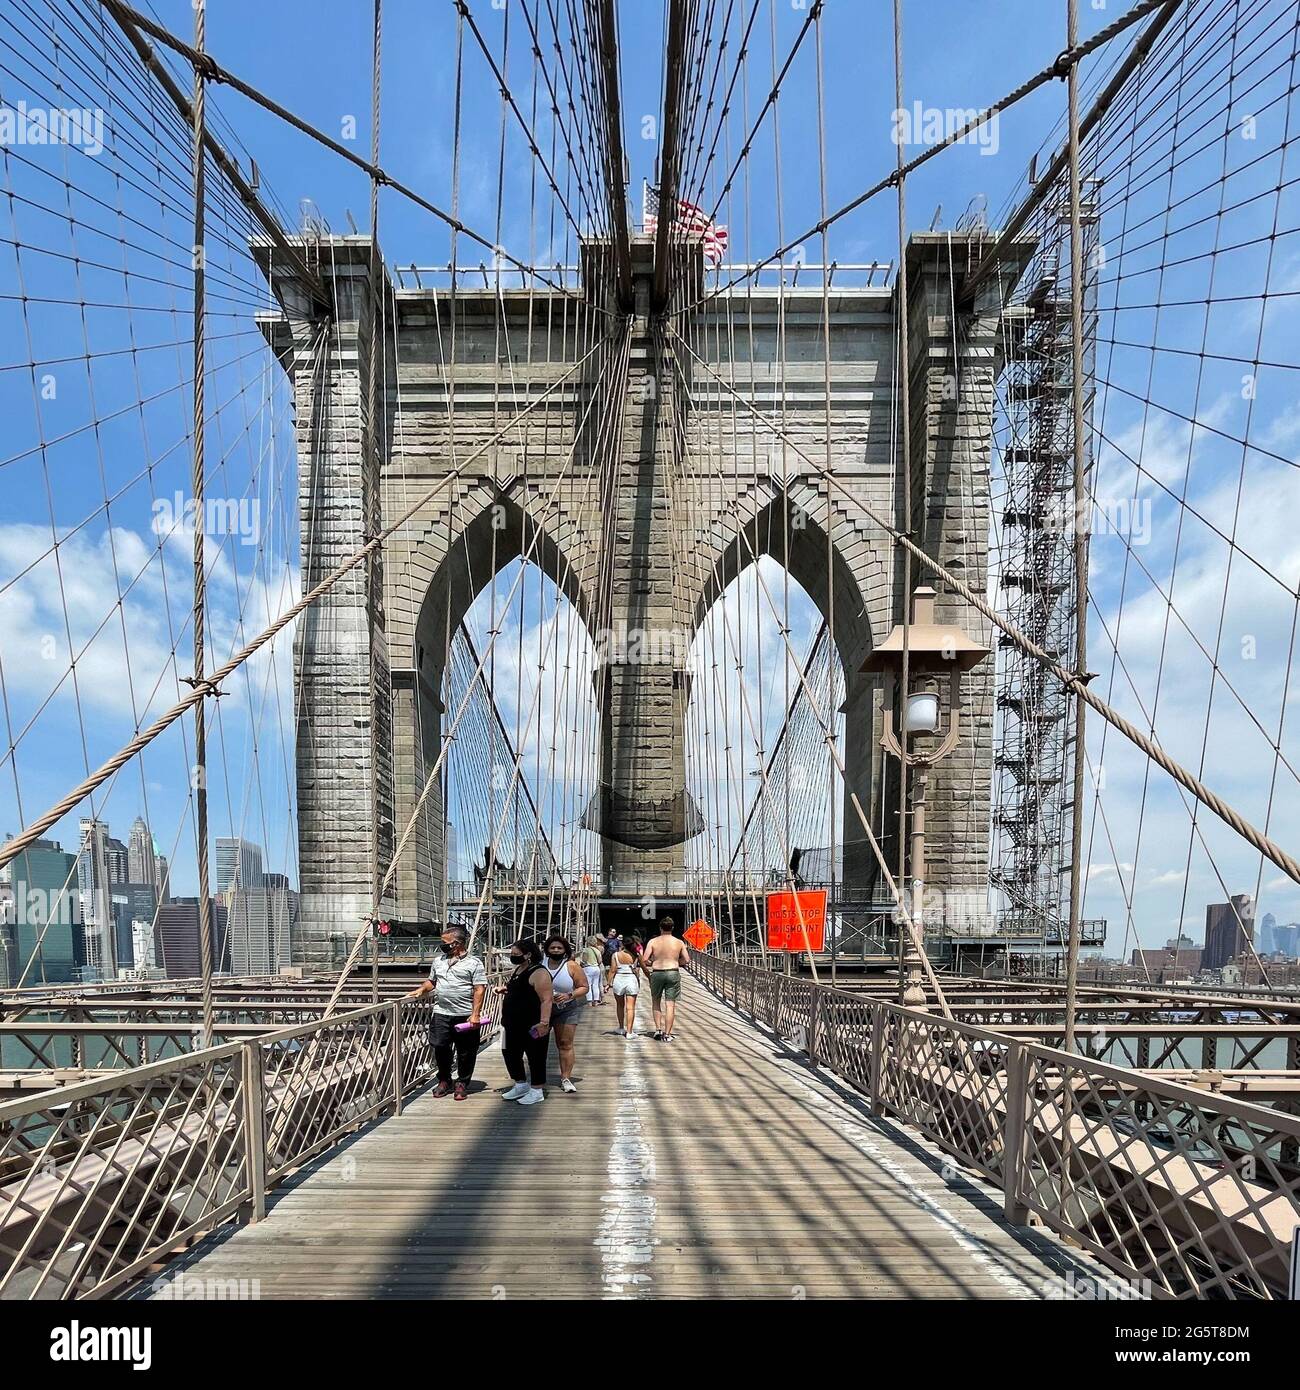 La passerelle entre le pont de Brooklyn à New York City dispose de voies séparées pour les piétons les marcheurs et cyclistes. Banque D'Images